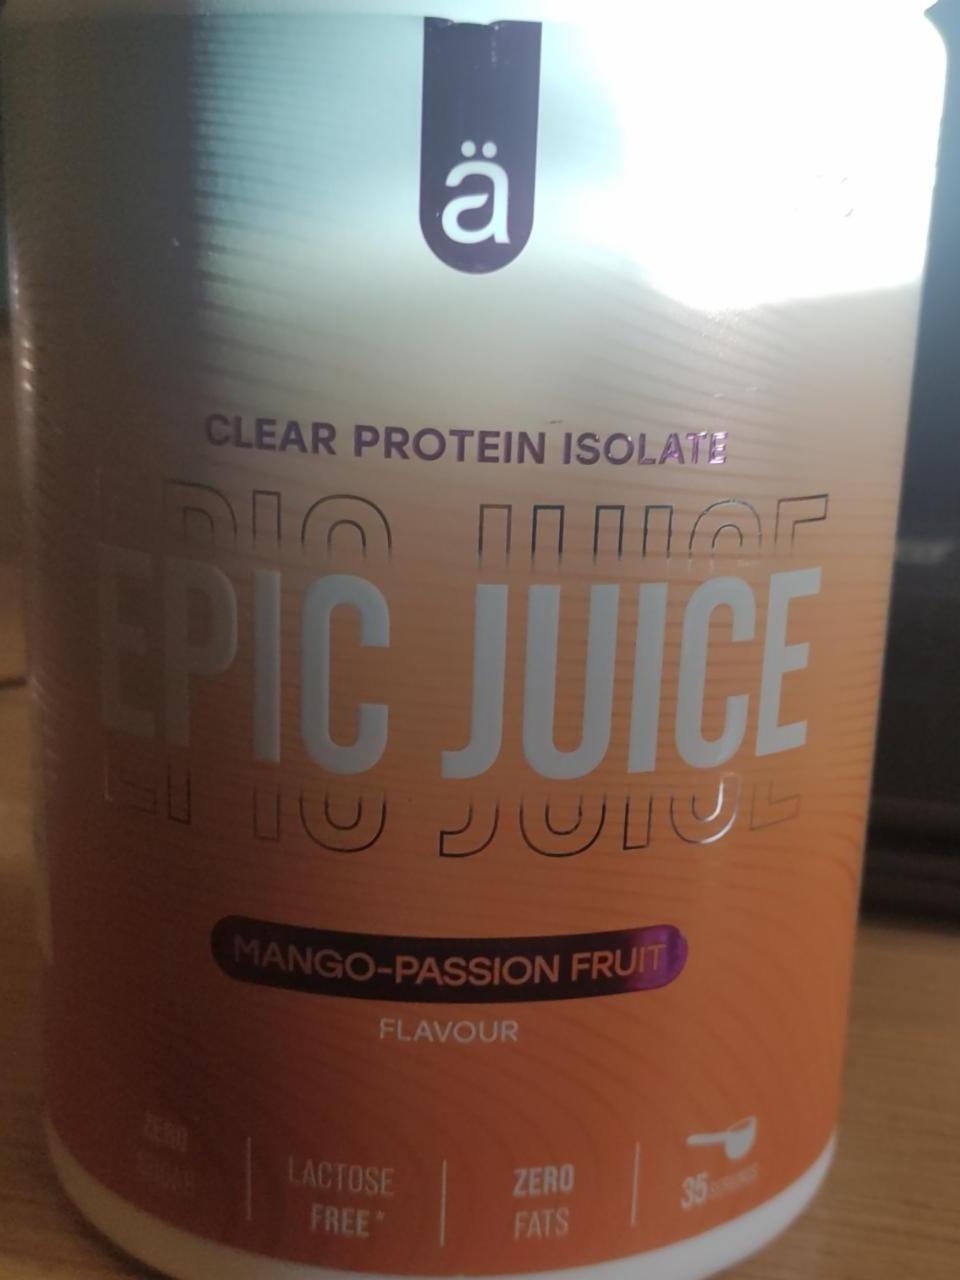 Fotografie - Epic Juice Mango-Passion Fruit flavour Näno